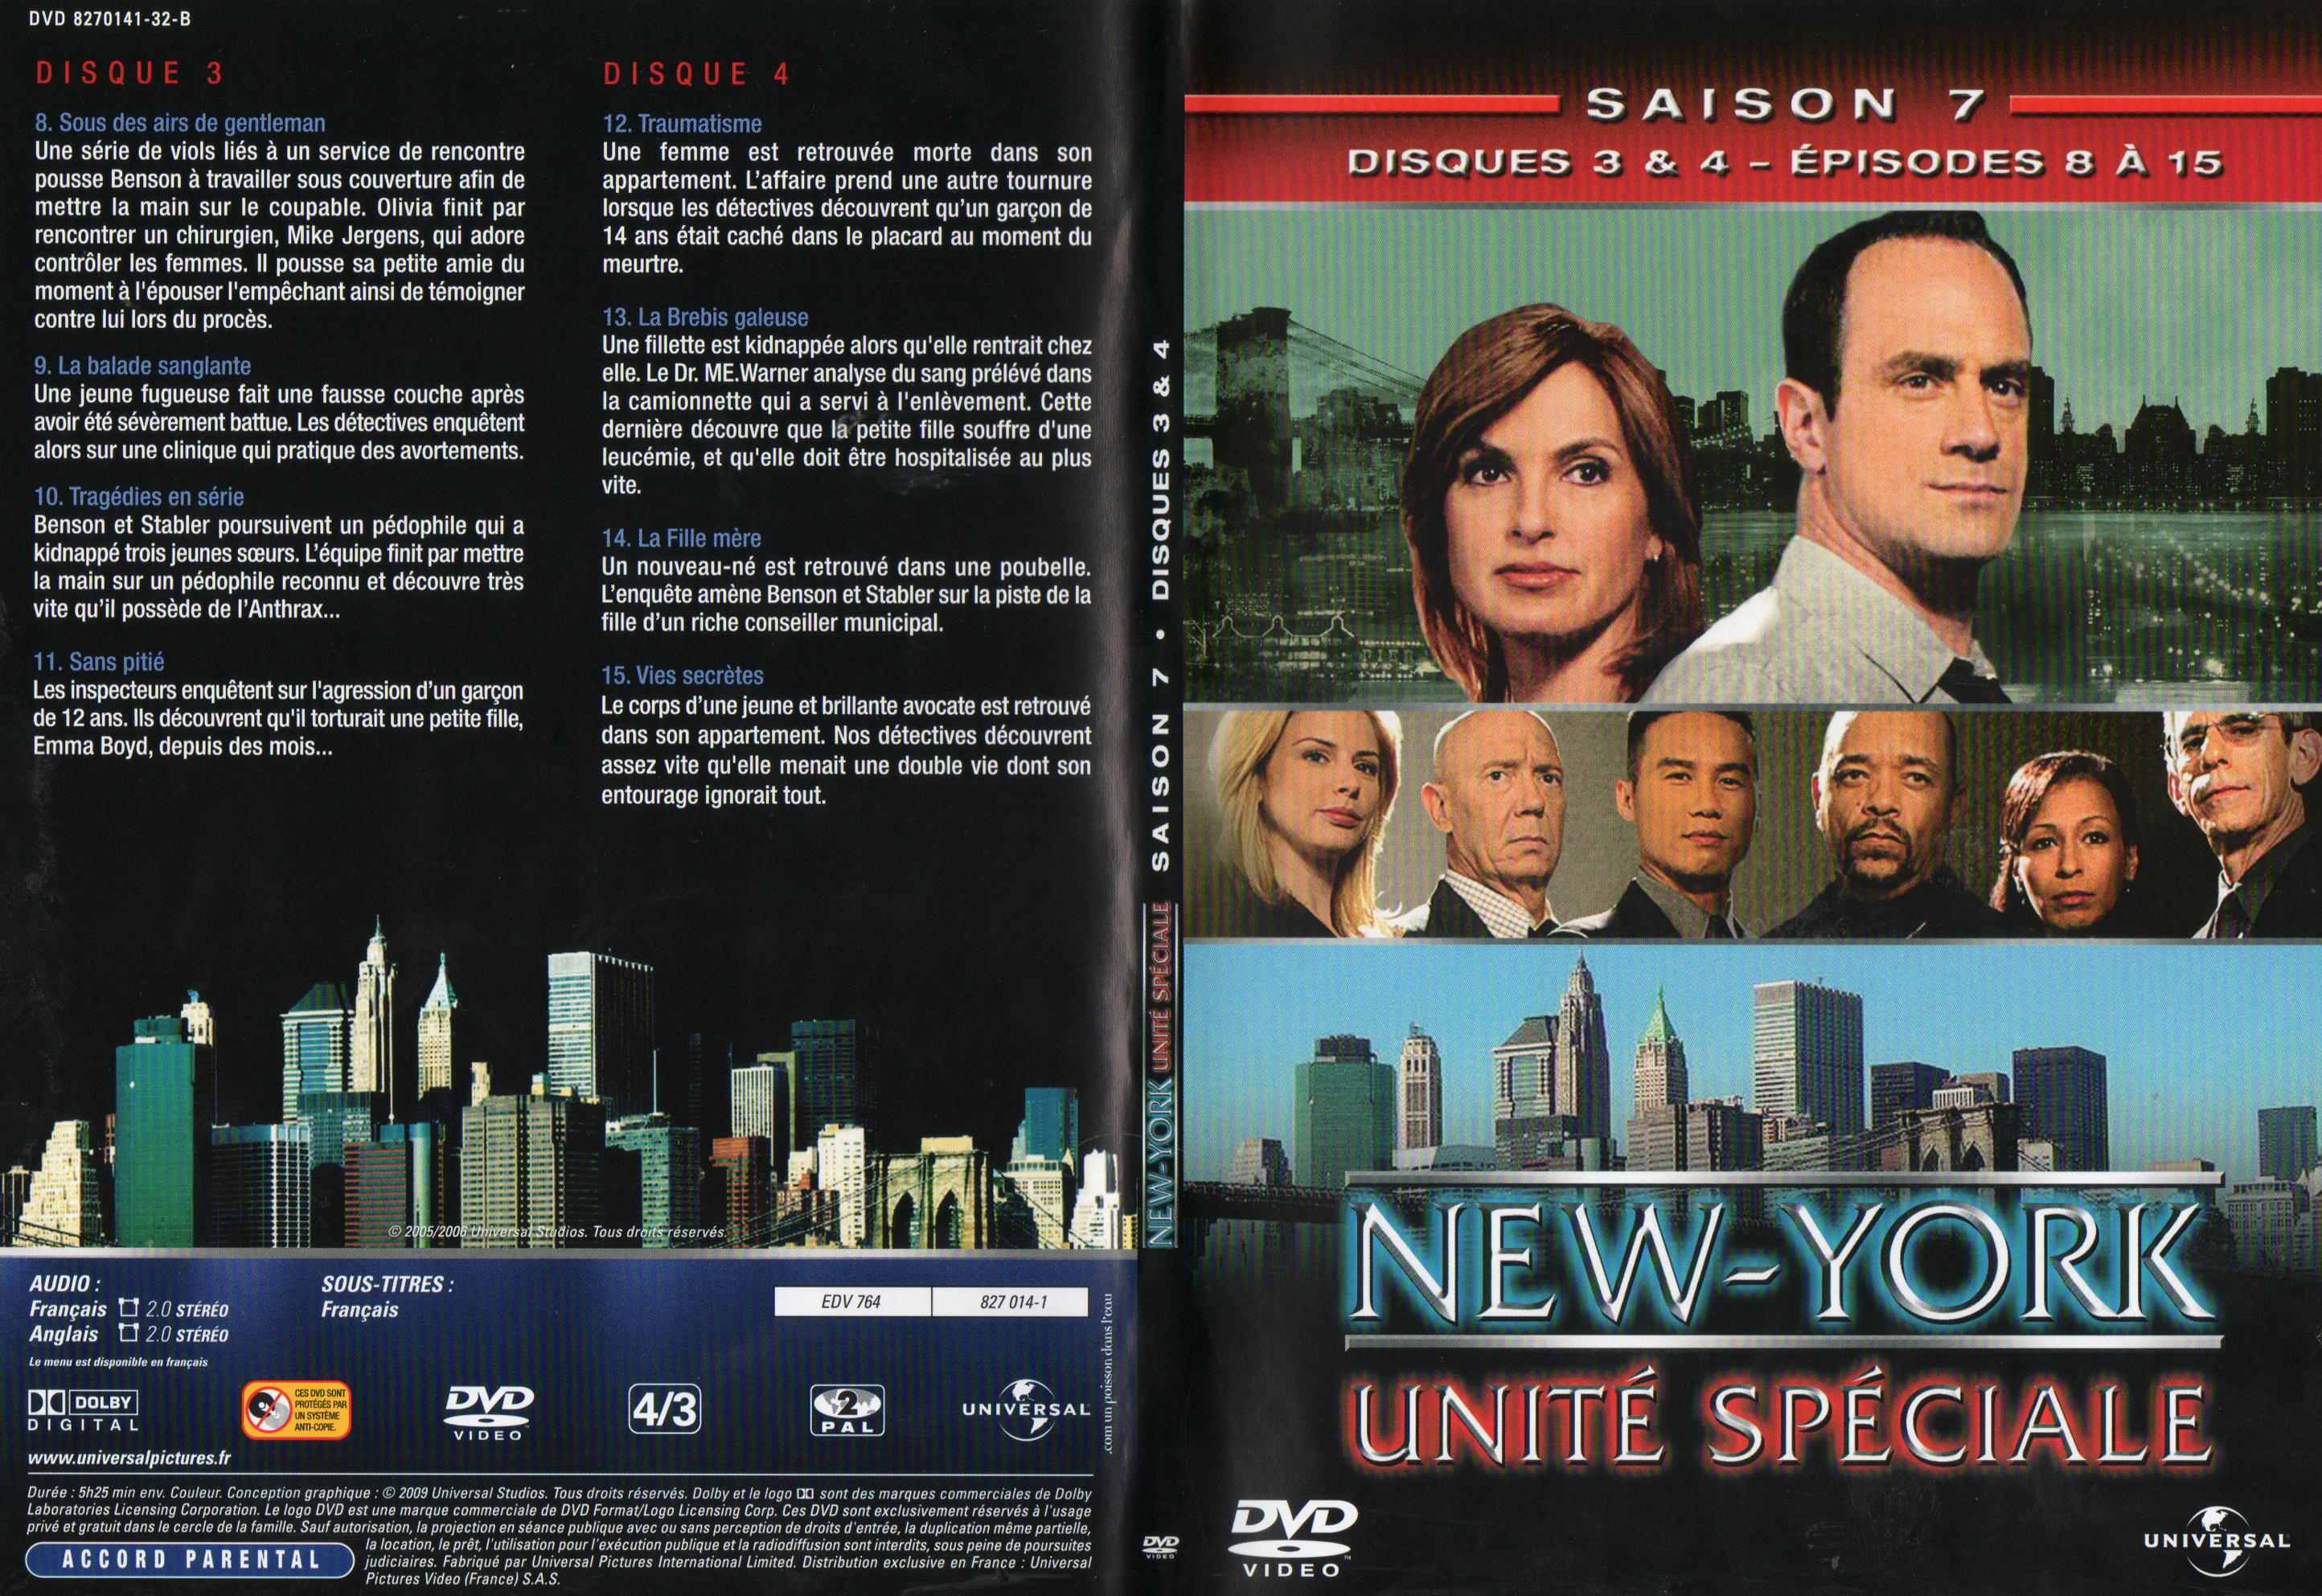 Jaquette DVD New York unit spciale saison 7 DVD 2